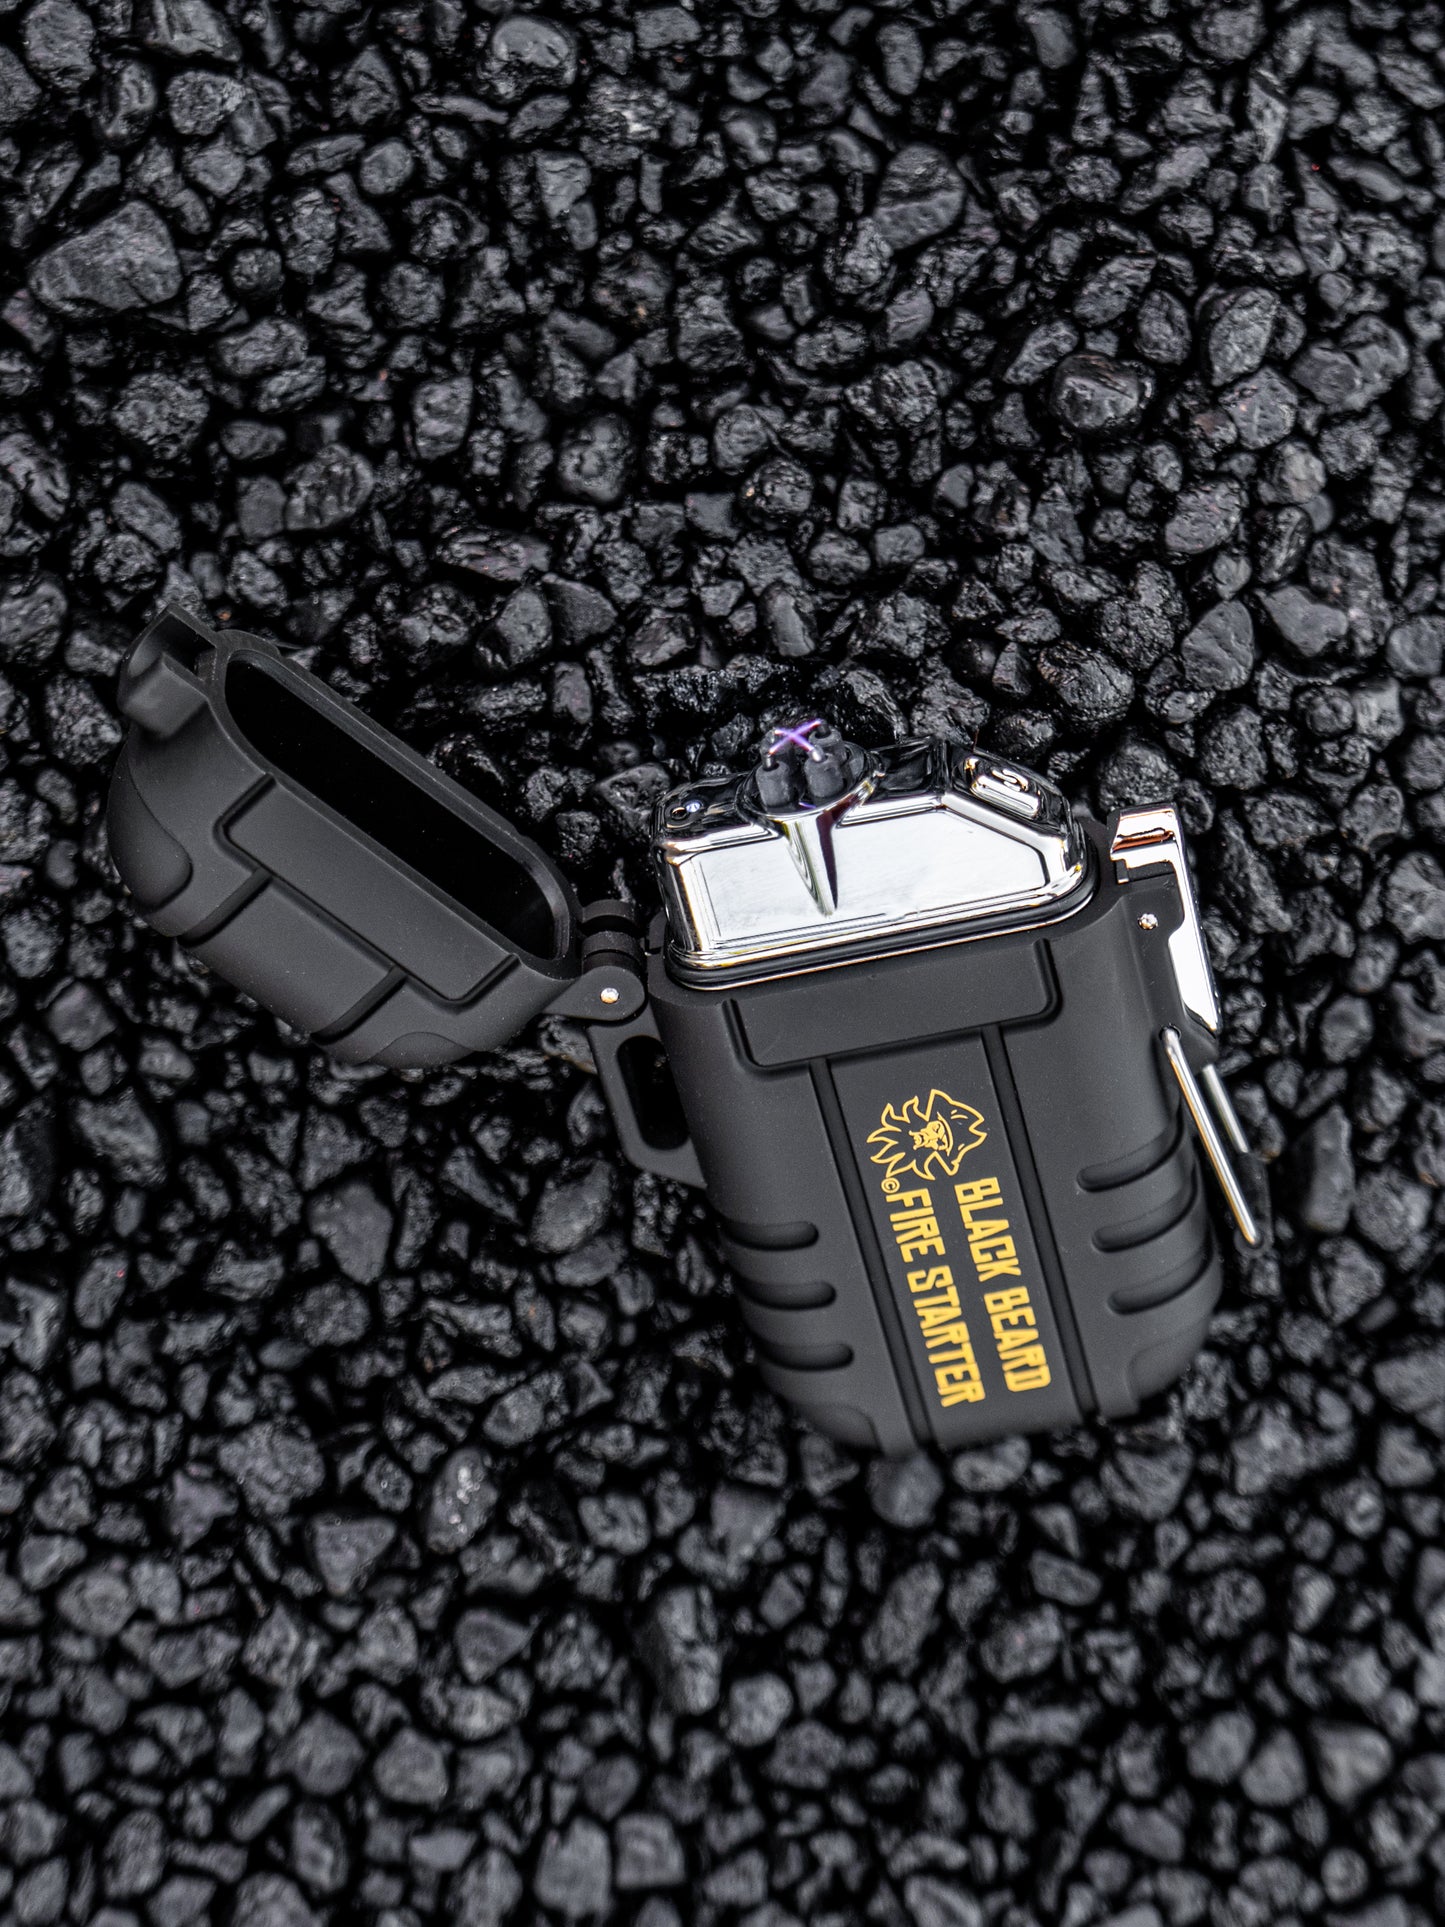 Black Beard Fire Plugs Fire Starter Kit - Arc Lighter